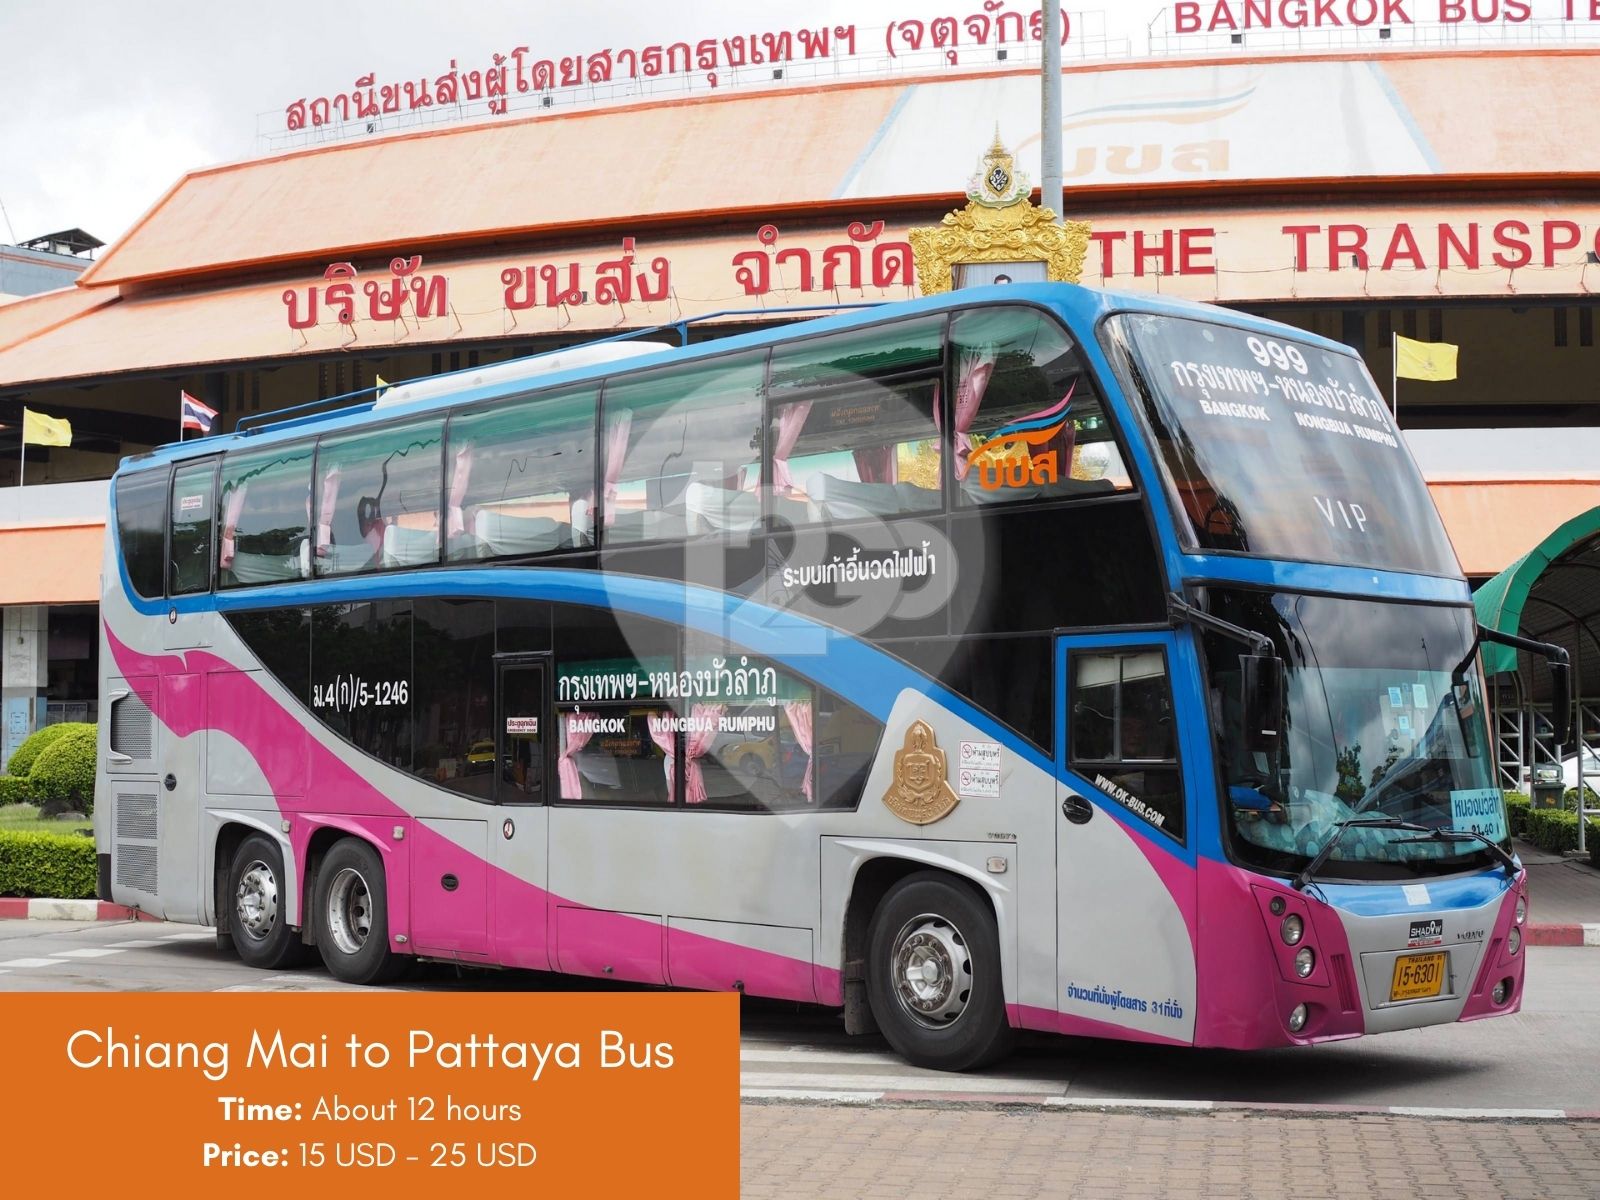 Chiang Mai to Pattaya bus